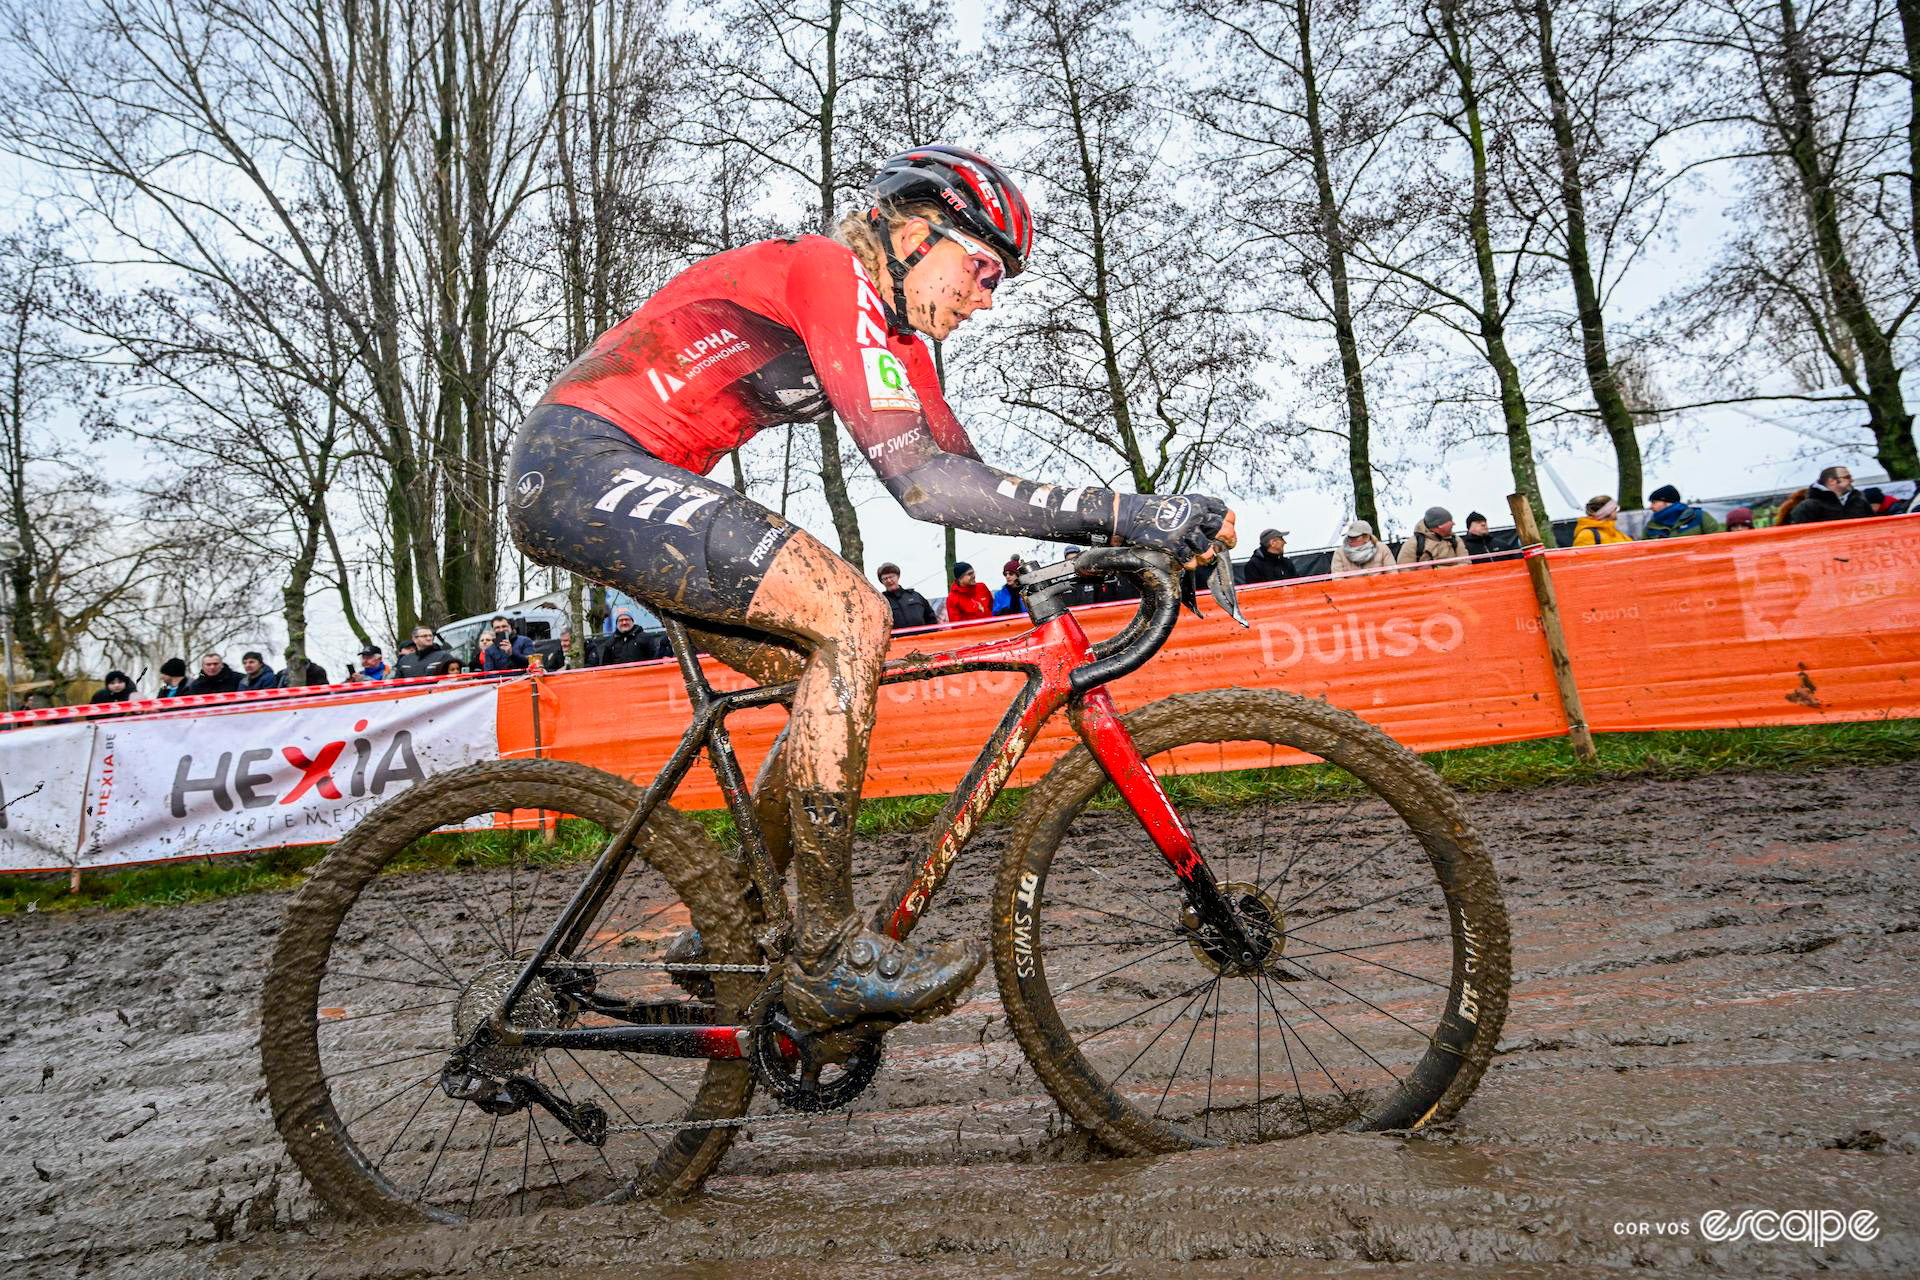 Aniek van Alphen during Hexia Cyclocross Gullegem.